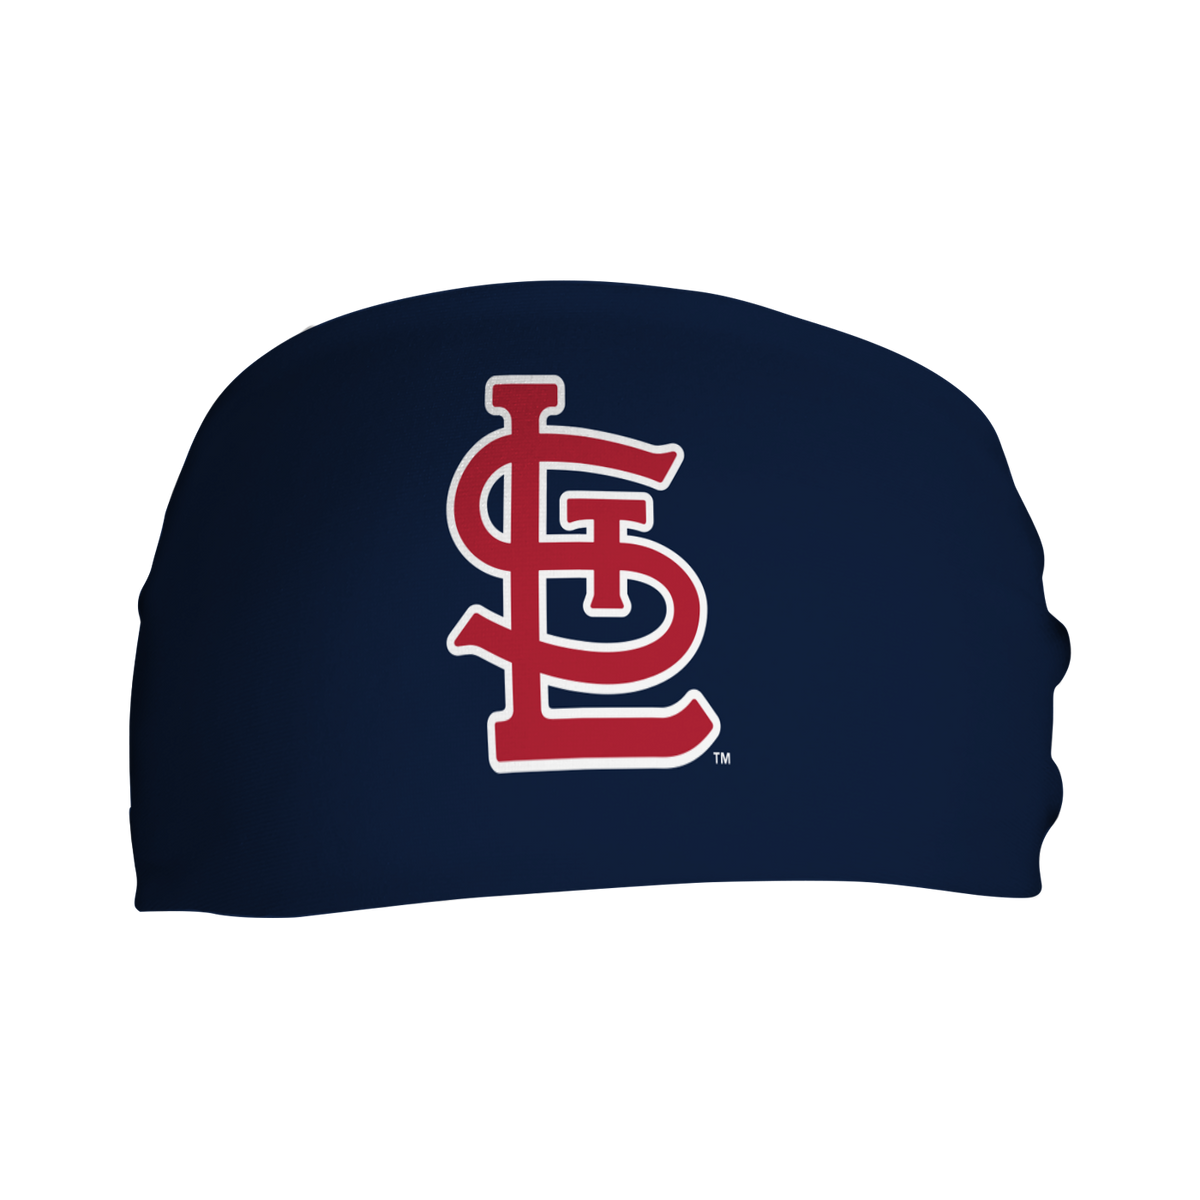 St Louis Cardinals/blues Logo 